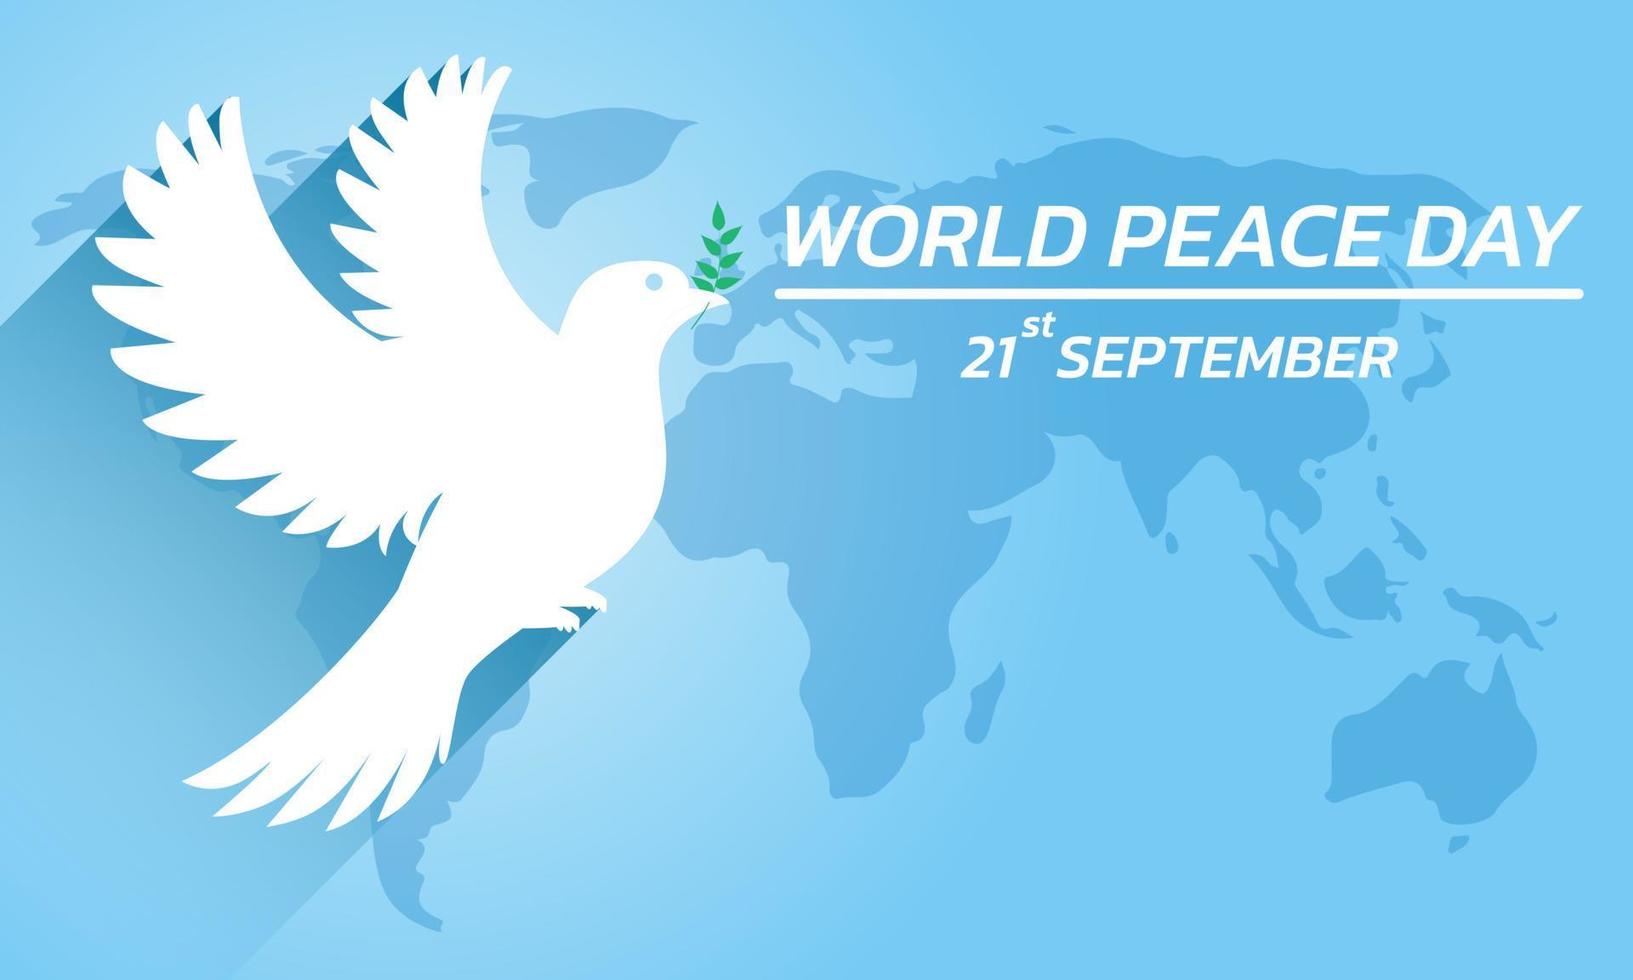 Konzept des internationalen Friedenstages. Illustrationskonzept gegenwärtige Welt des Friedens. Vektor veranschaulichen.